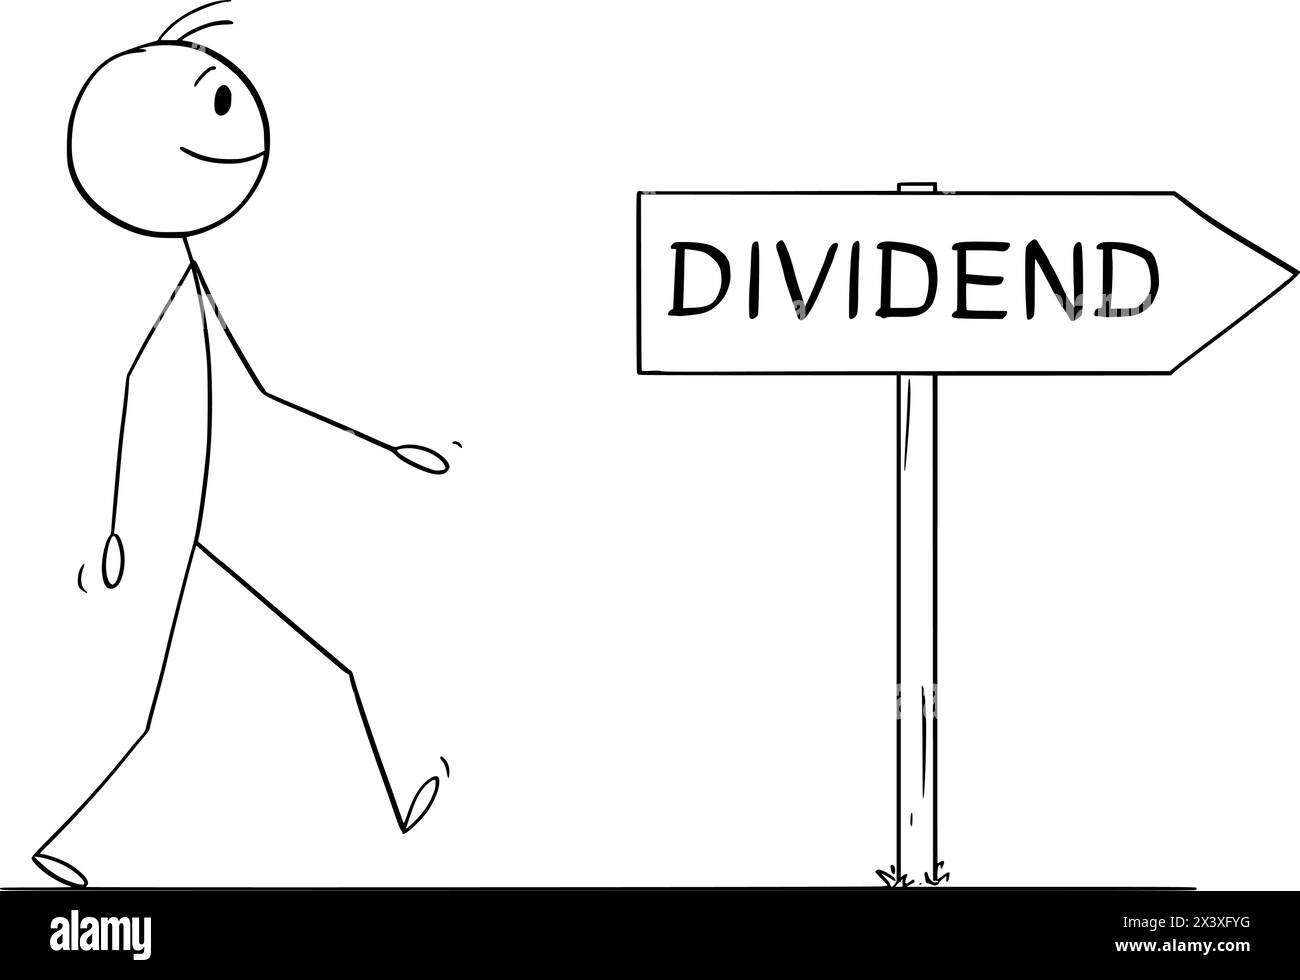 Investor geht für Dividende, Vektor-Cartoon-Stick-Abbildung Stock Vektor